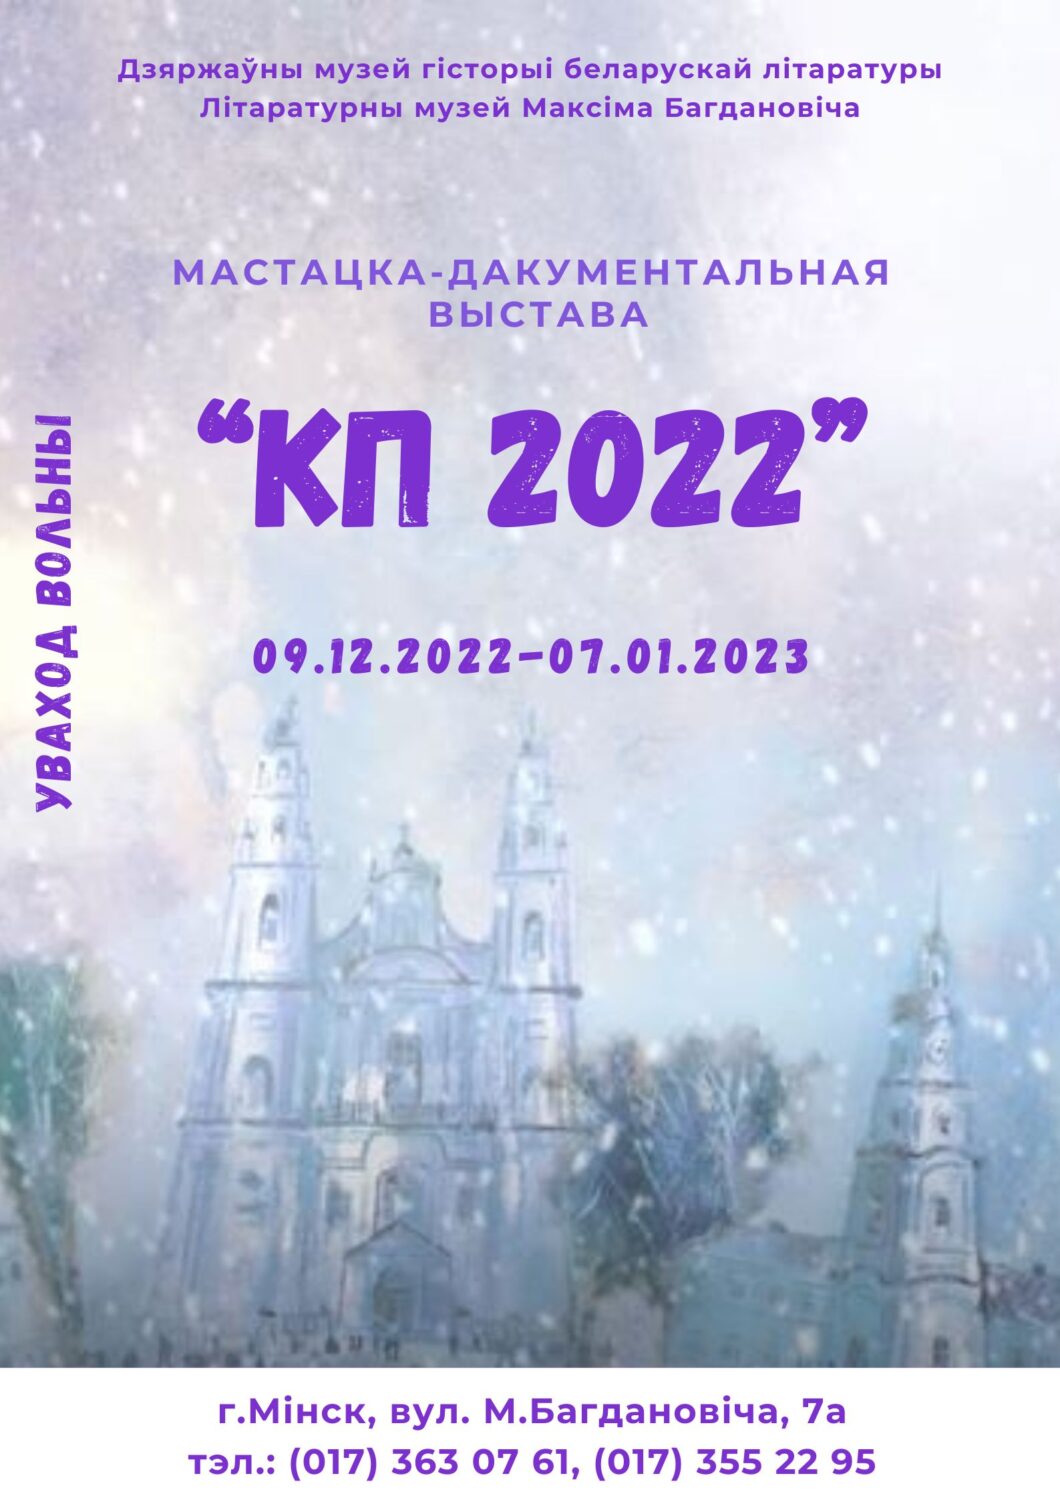 Запрашаем на мастацка-дакументальную выставу “КП 2022”